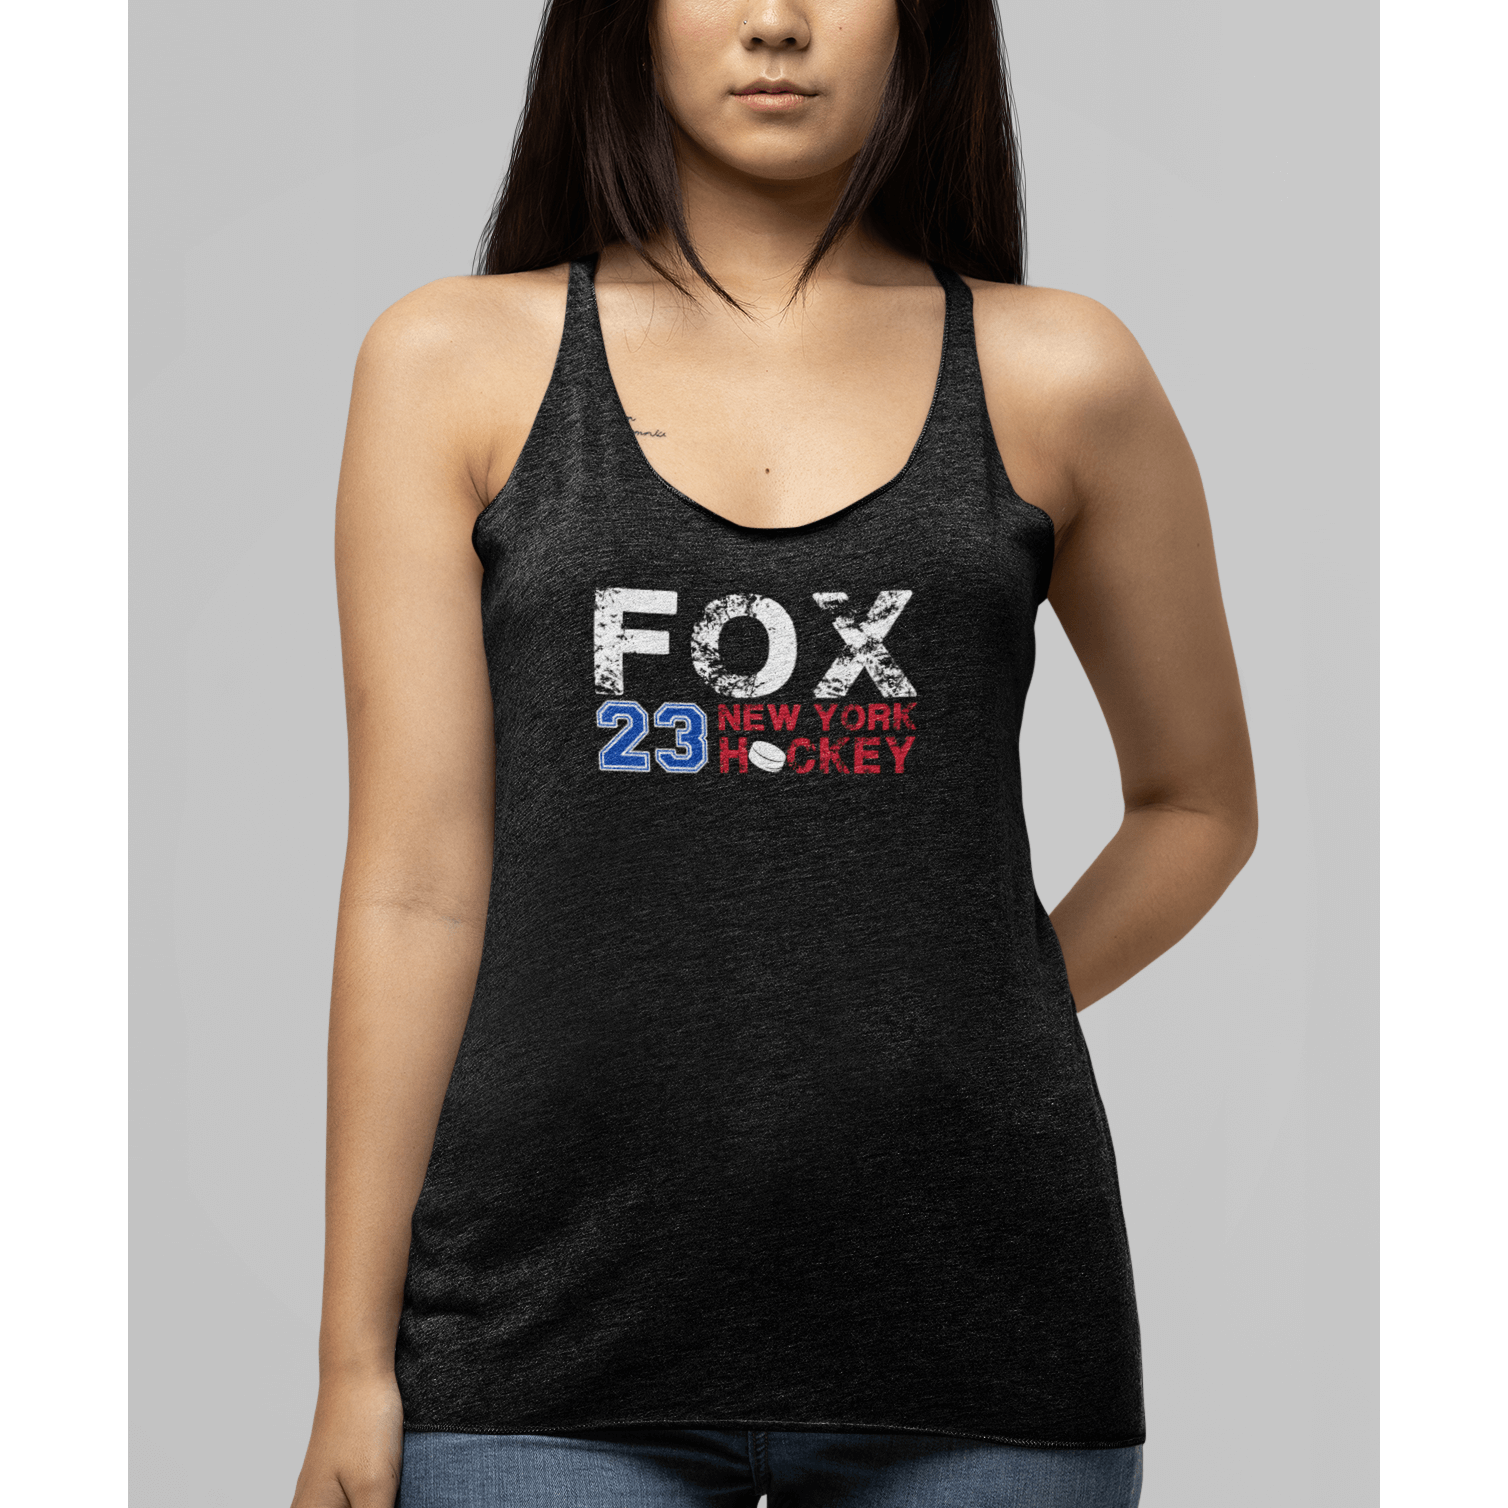 Fox 23 New York Hockey Women's Tri-Blend Racerback Tank Top